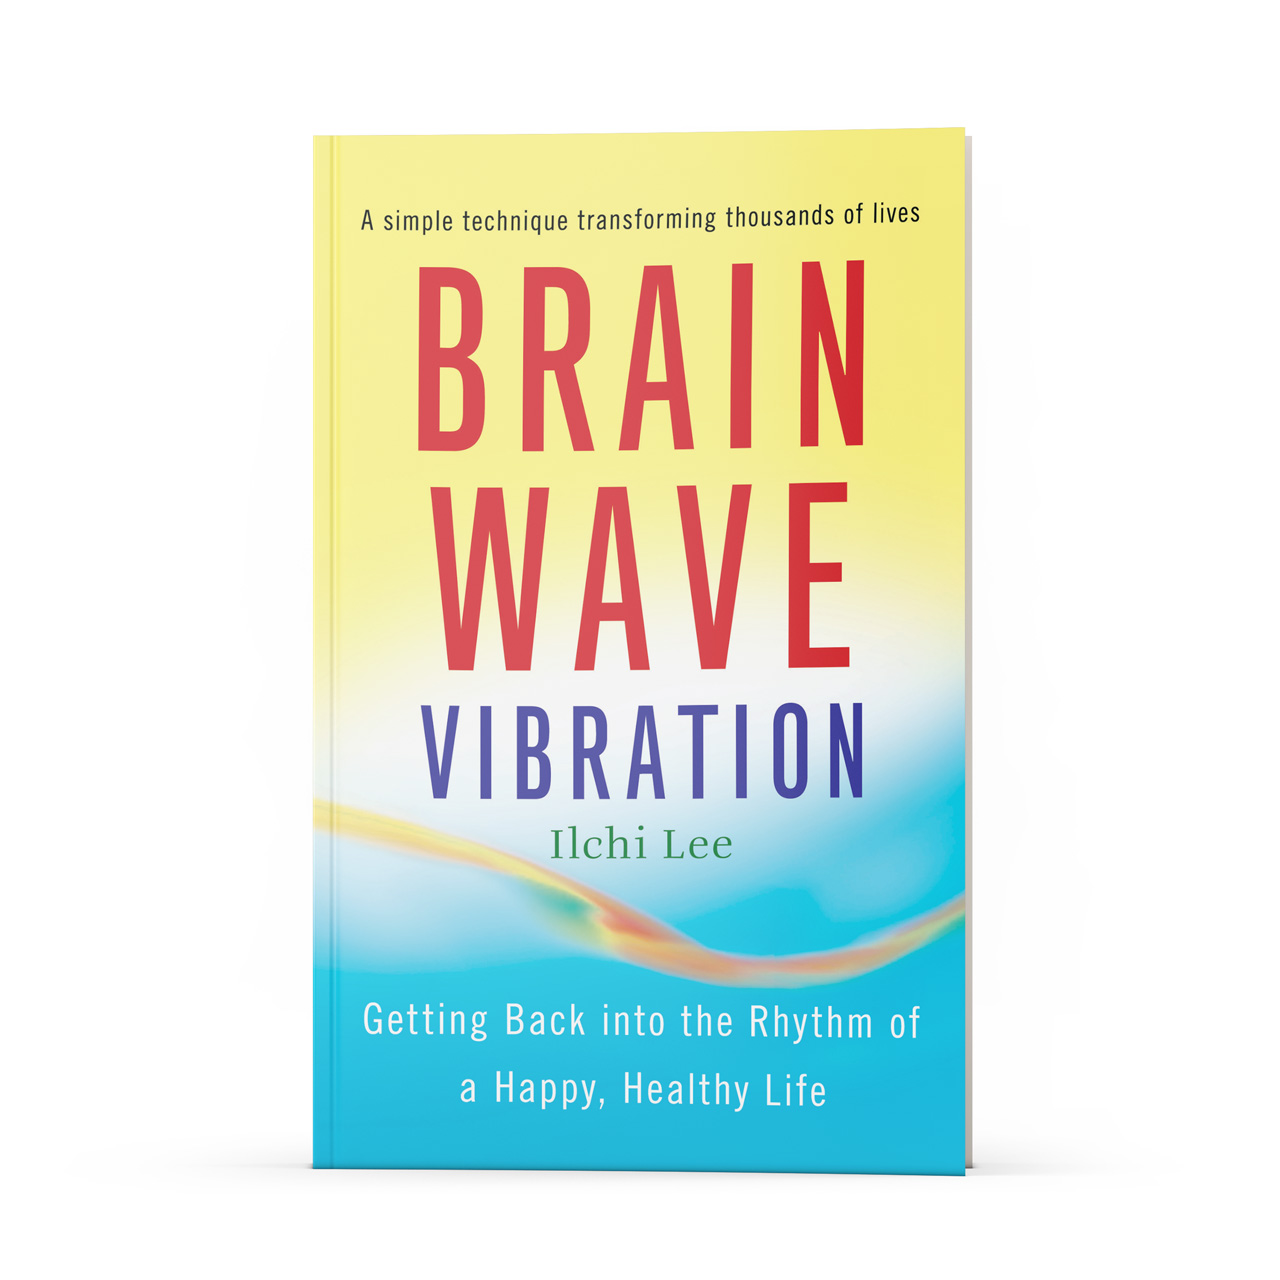 Brain Wave Vibration